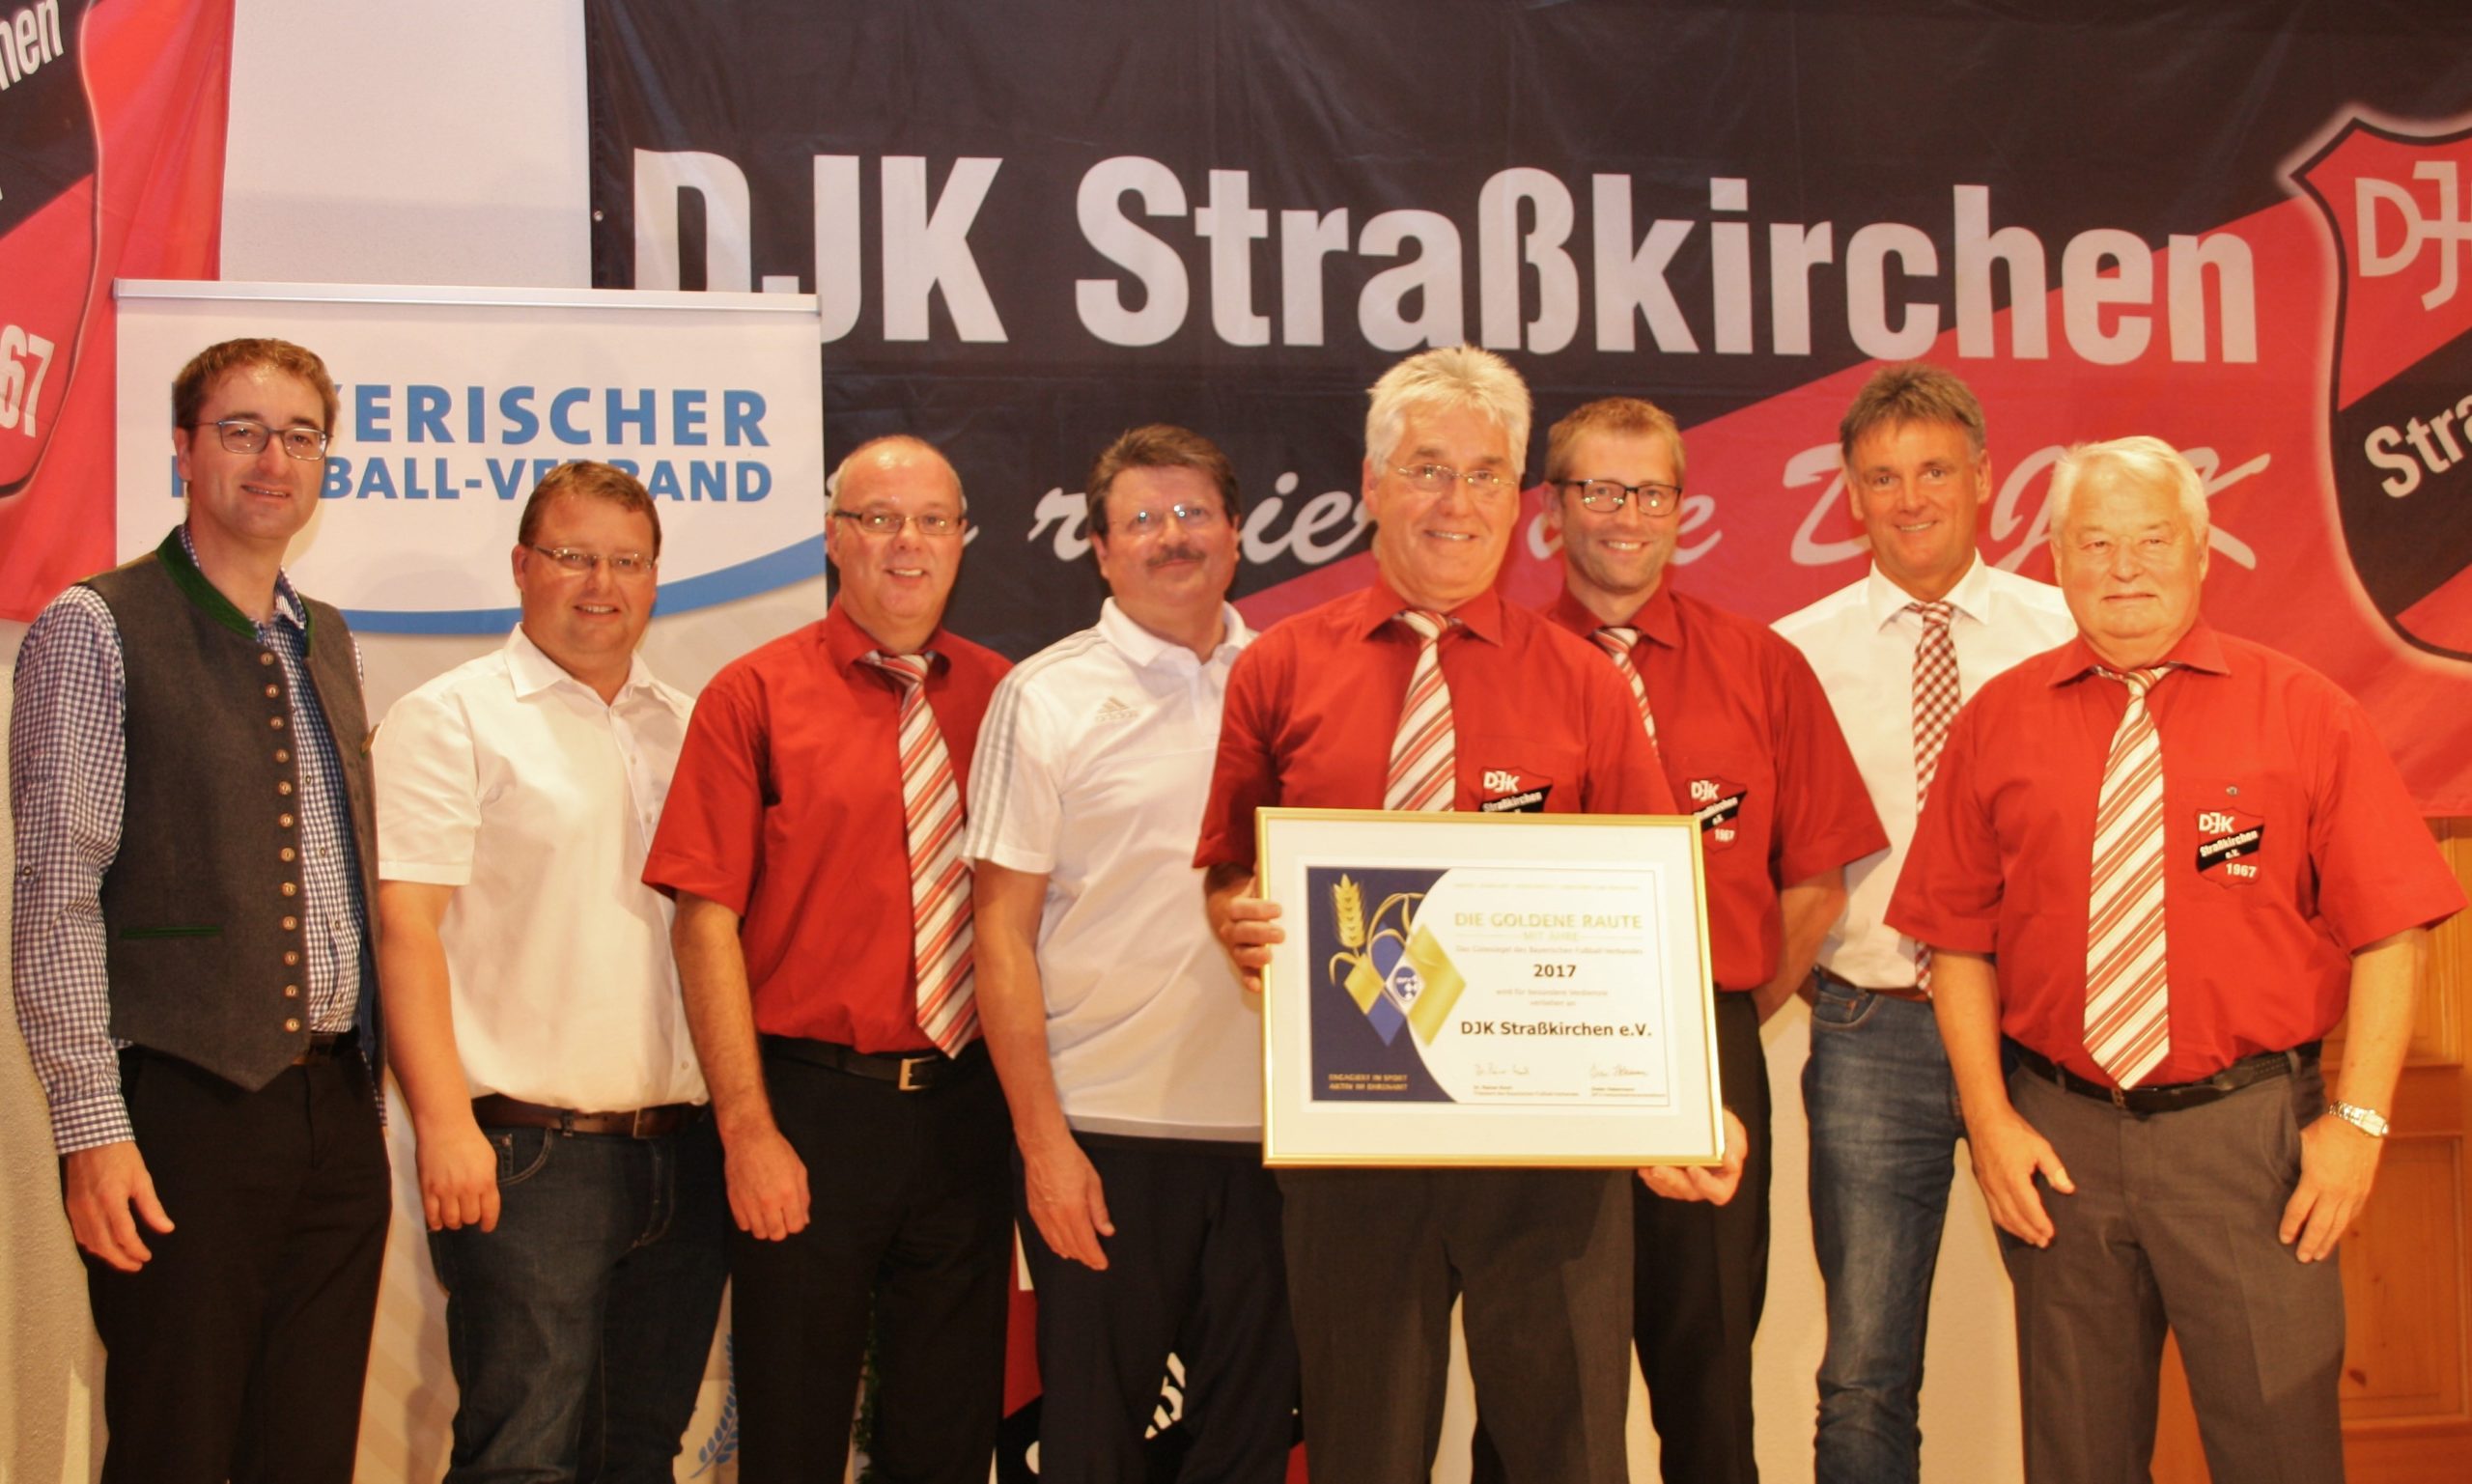 DJK Straßkirchen mit Goldener Raute mit Ähre ausgezeichnet – Inklusion wird in der DJK gelebt